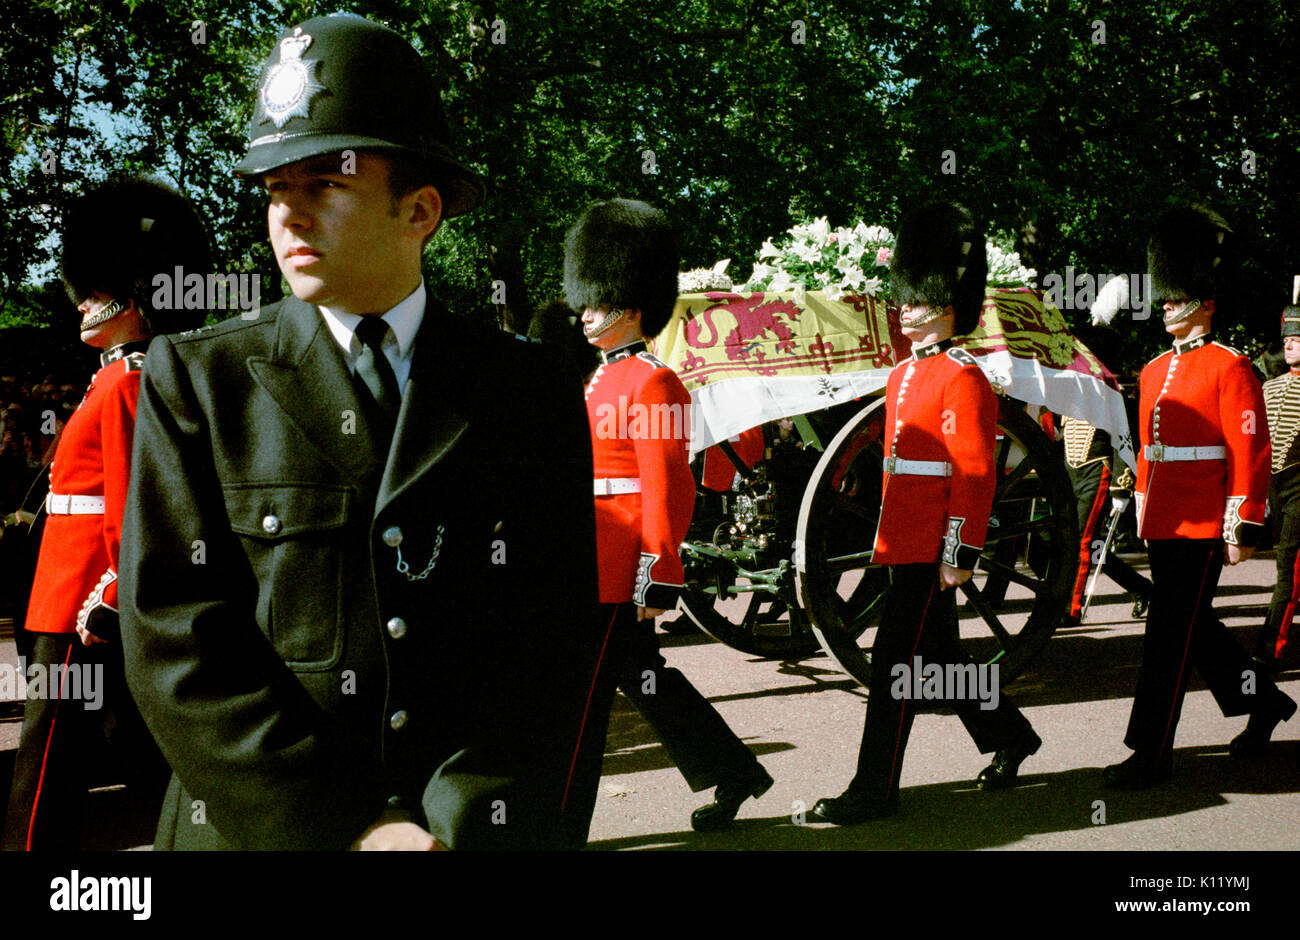 London, UK, 6 septembre, 1997. Funérailles de Diana, princesse de Galles. Princess Diana's cercueil drapé de l'étendard royal est montré en cours sur un affût de canon accompagnée par huit membres du Welsh Guards comme la procession funéraire fait son chemin le long de Horse Guards Road. Banque D'Images